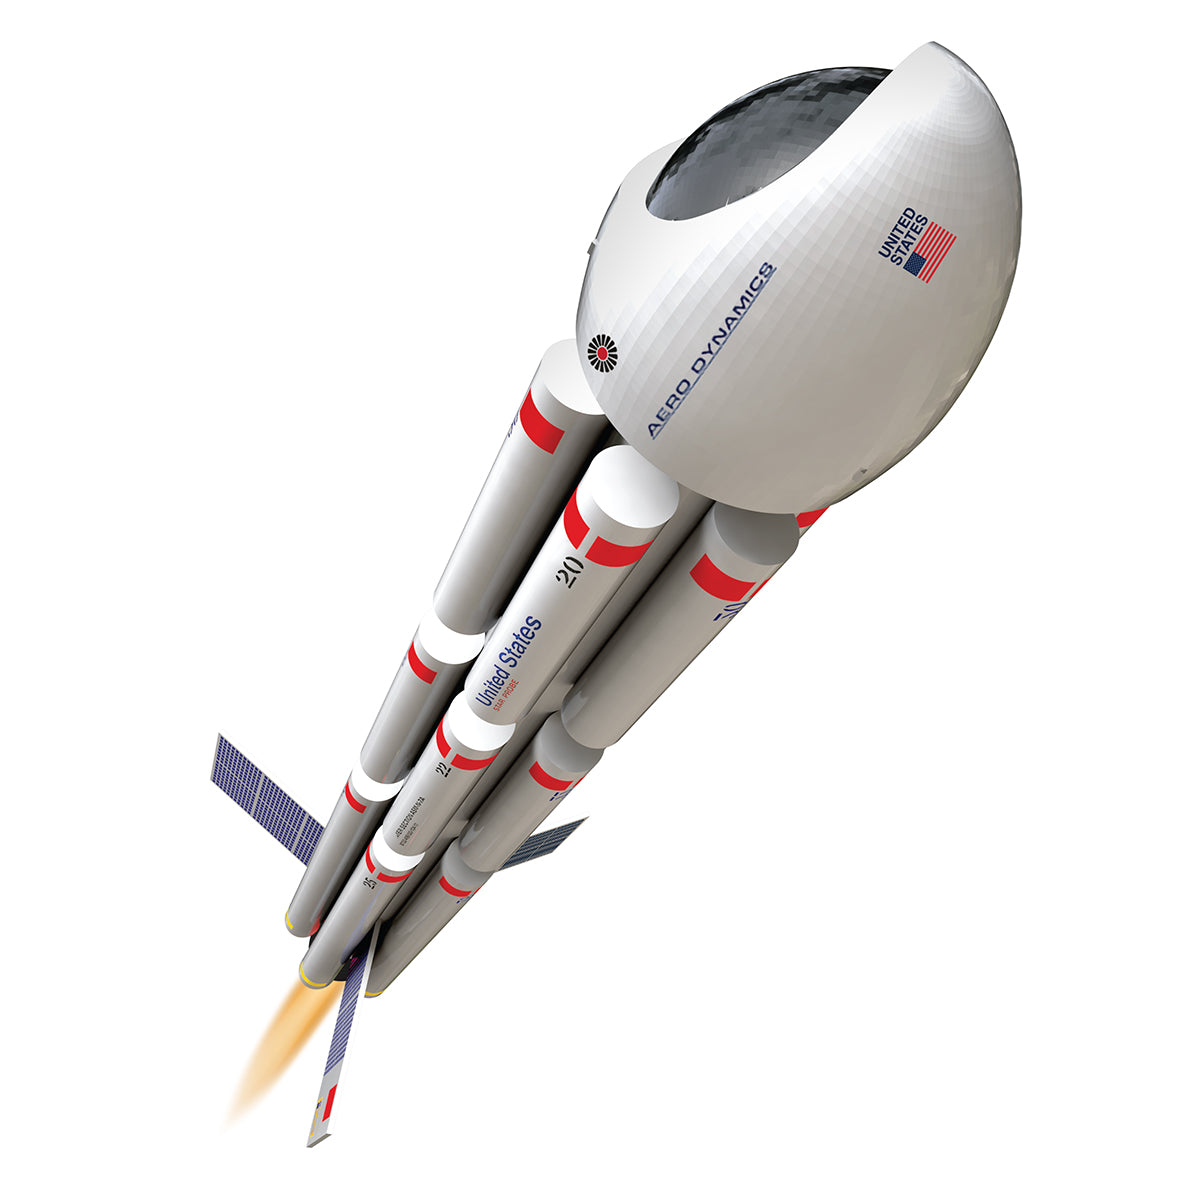 Estes Explorer Aquarius Model Rocket